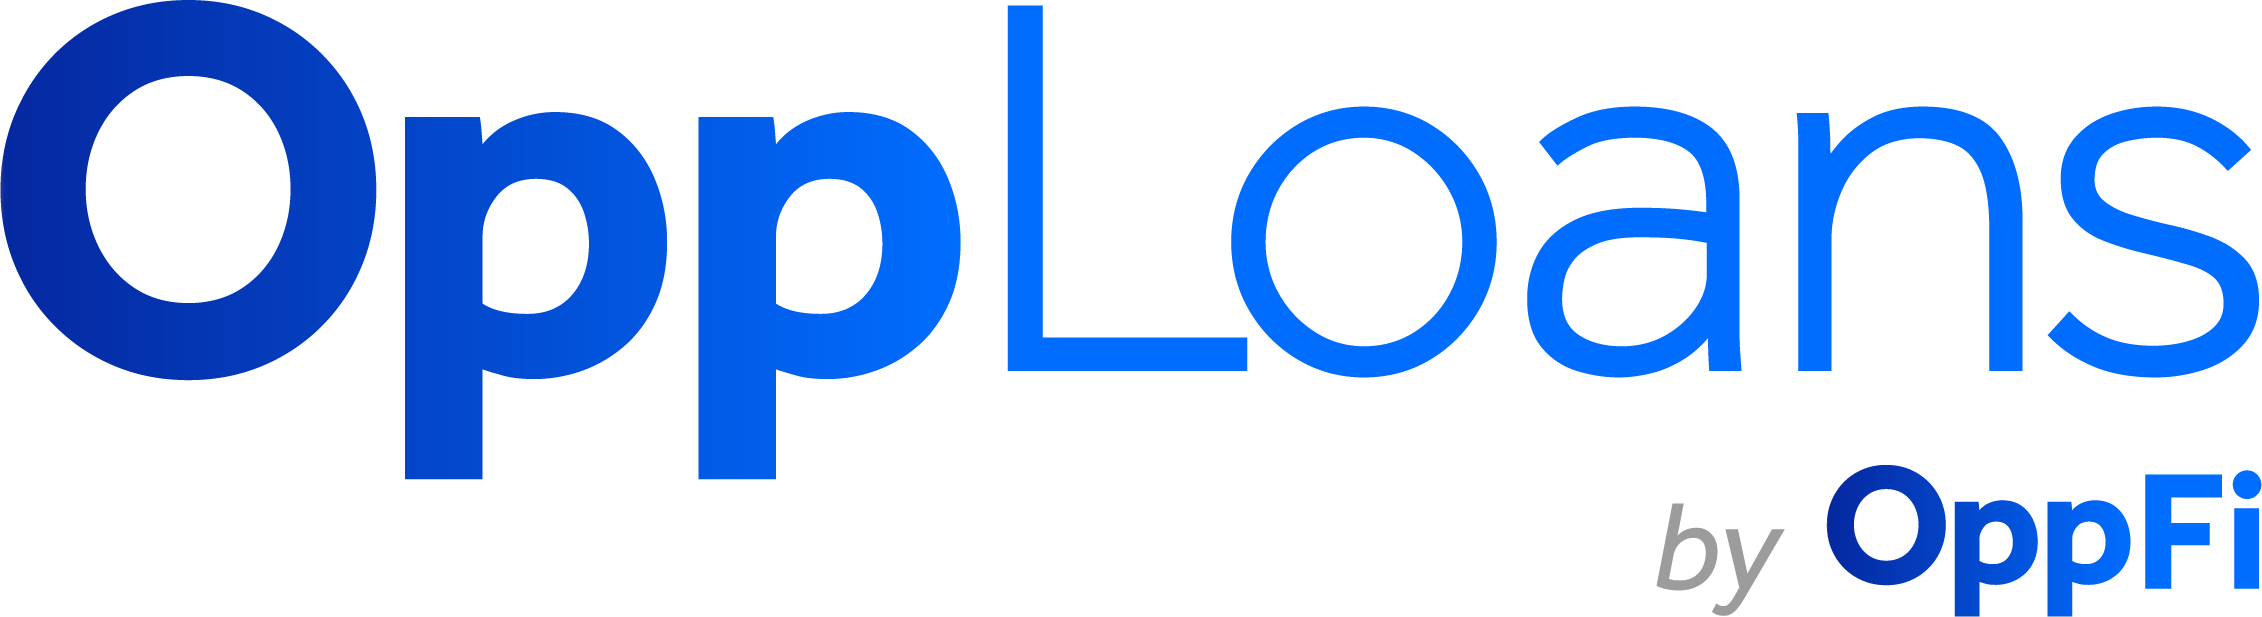 OppLoans Personal Loans Logo